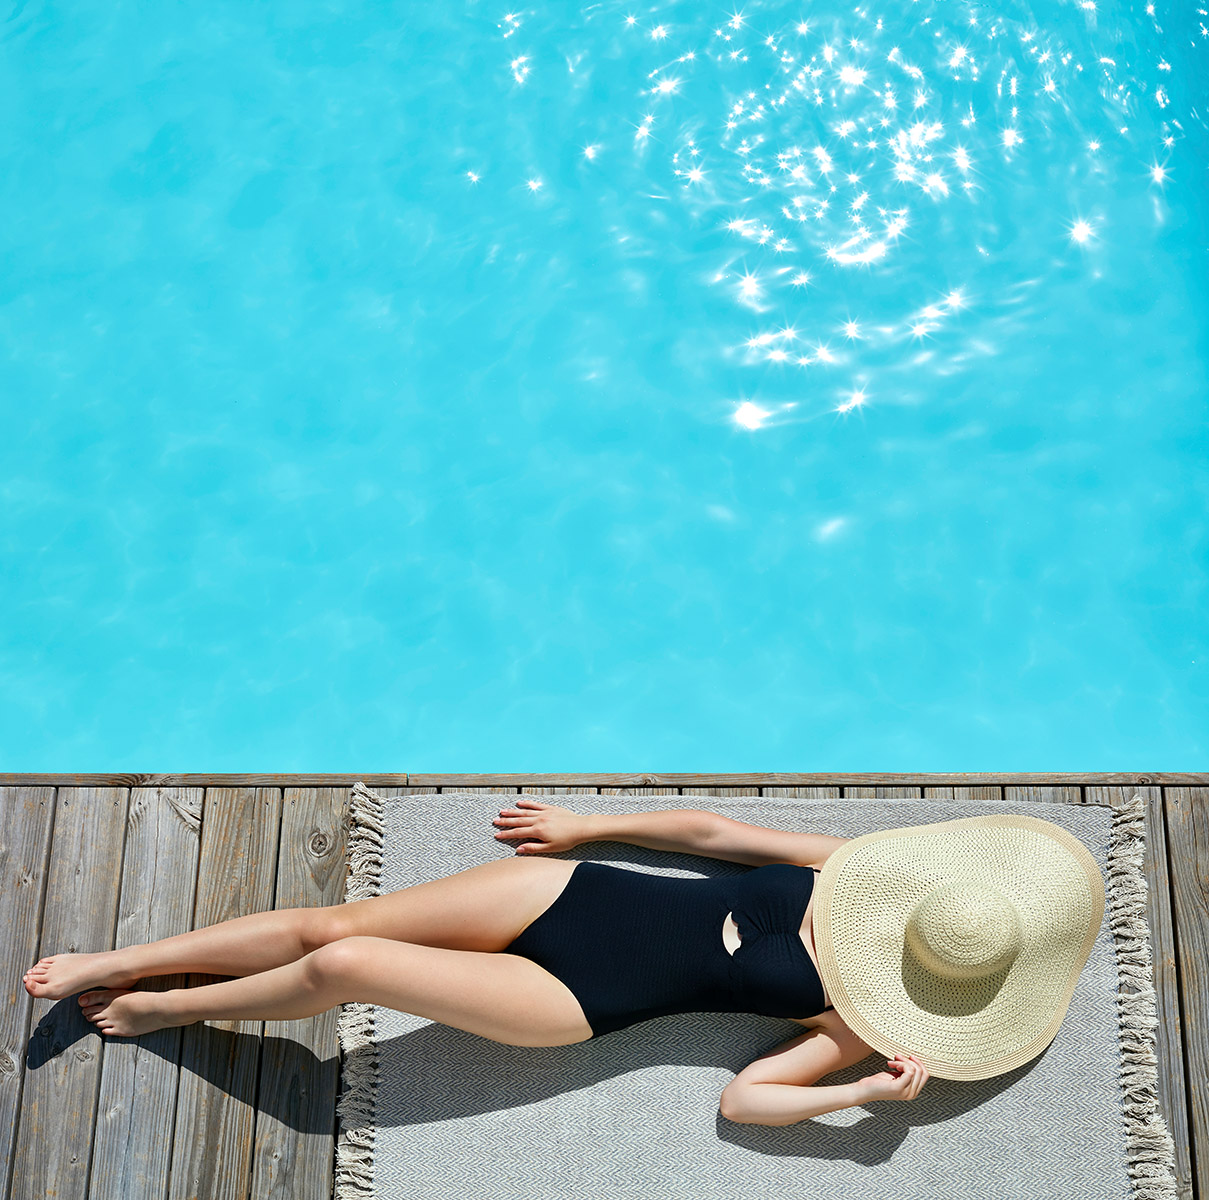 Jeune fille en maillot de bain noir allongée au bord d'une piscine